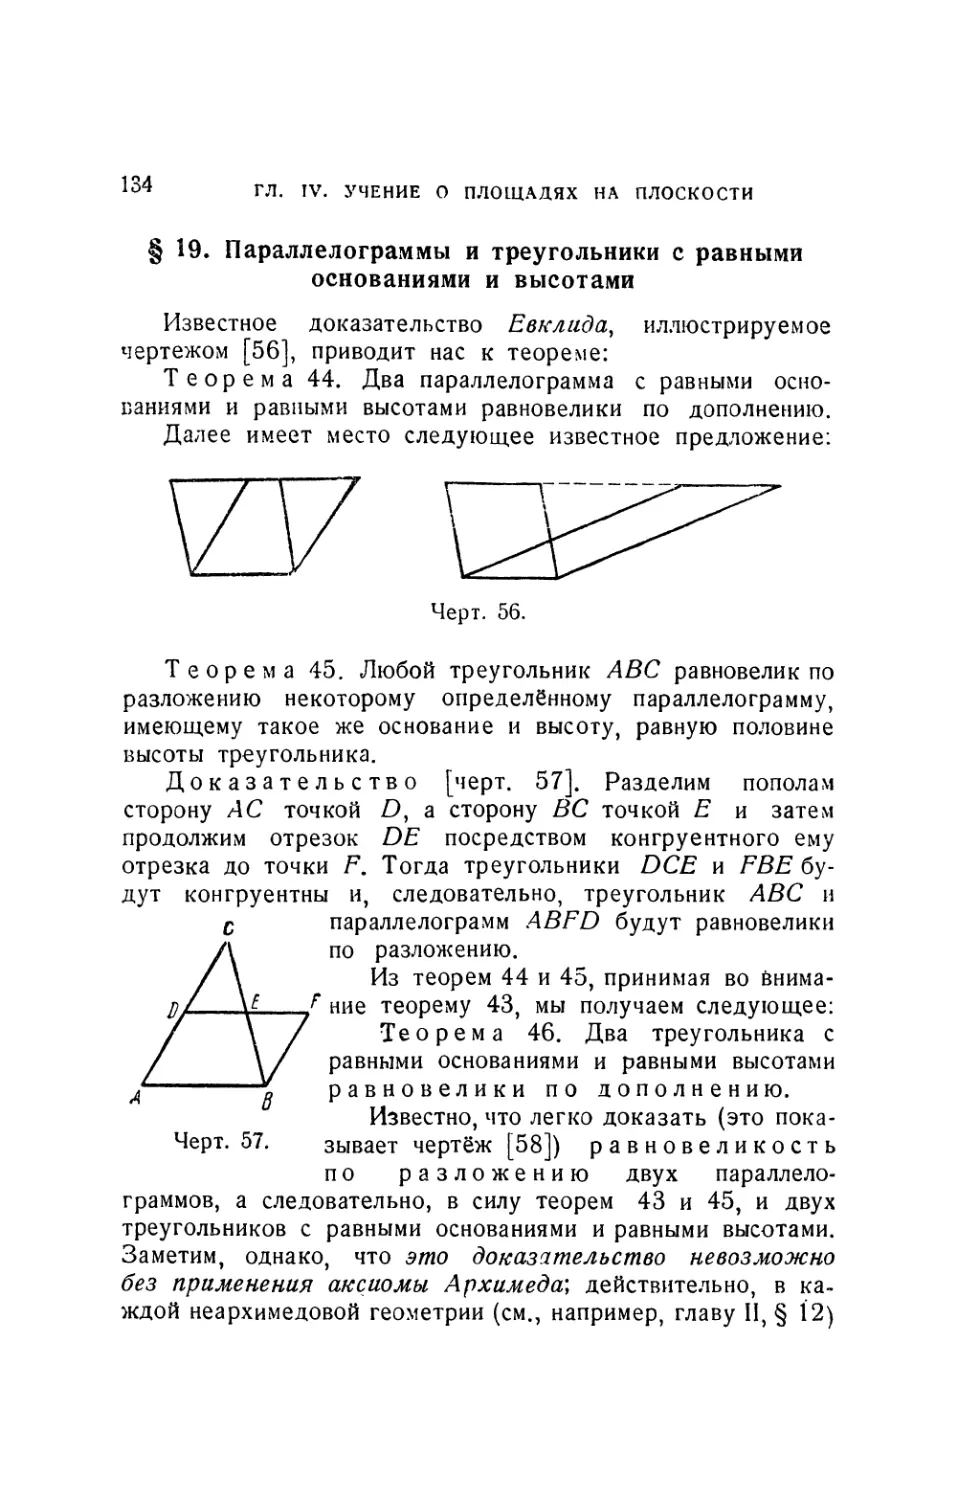 § 19. Параллелограммы и треугольники с равными основаниями и высотами